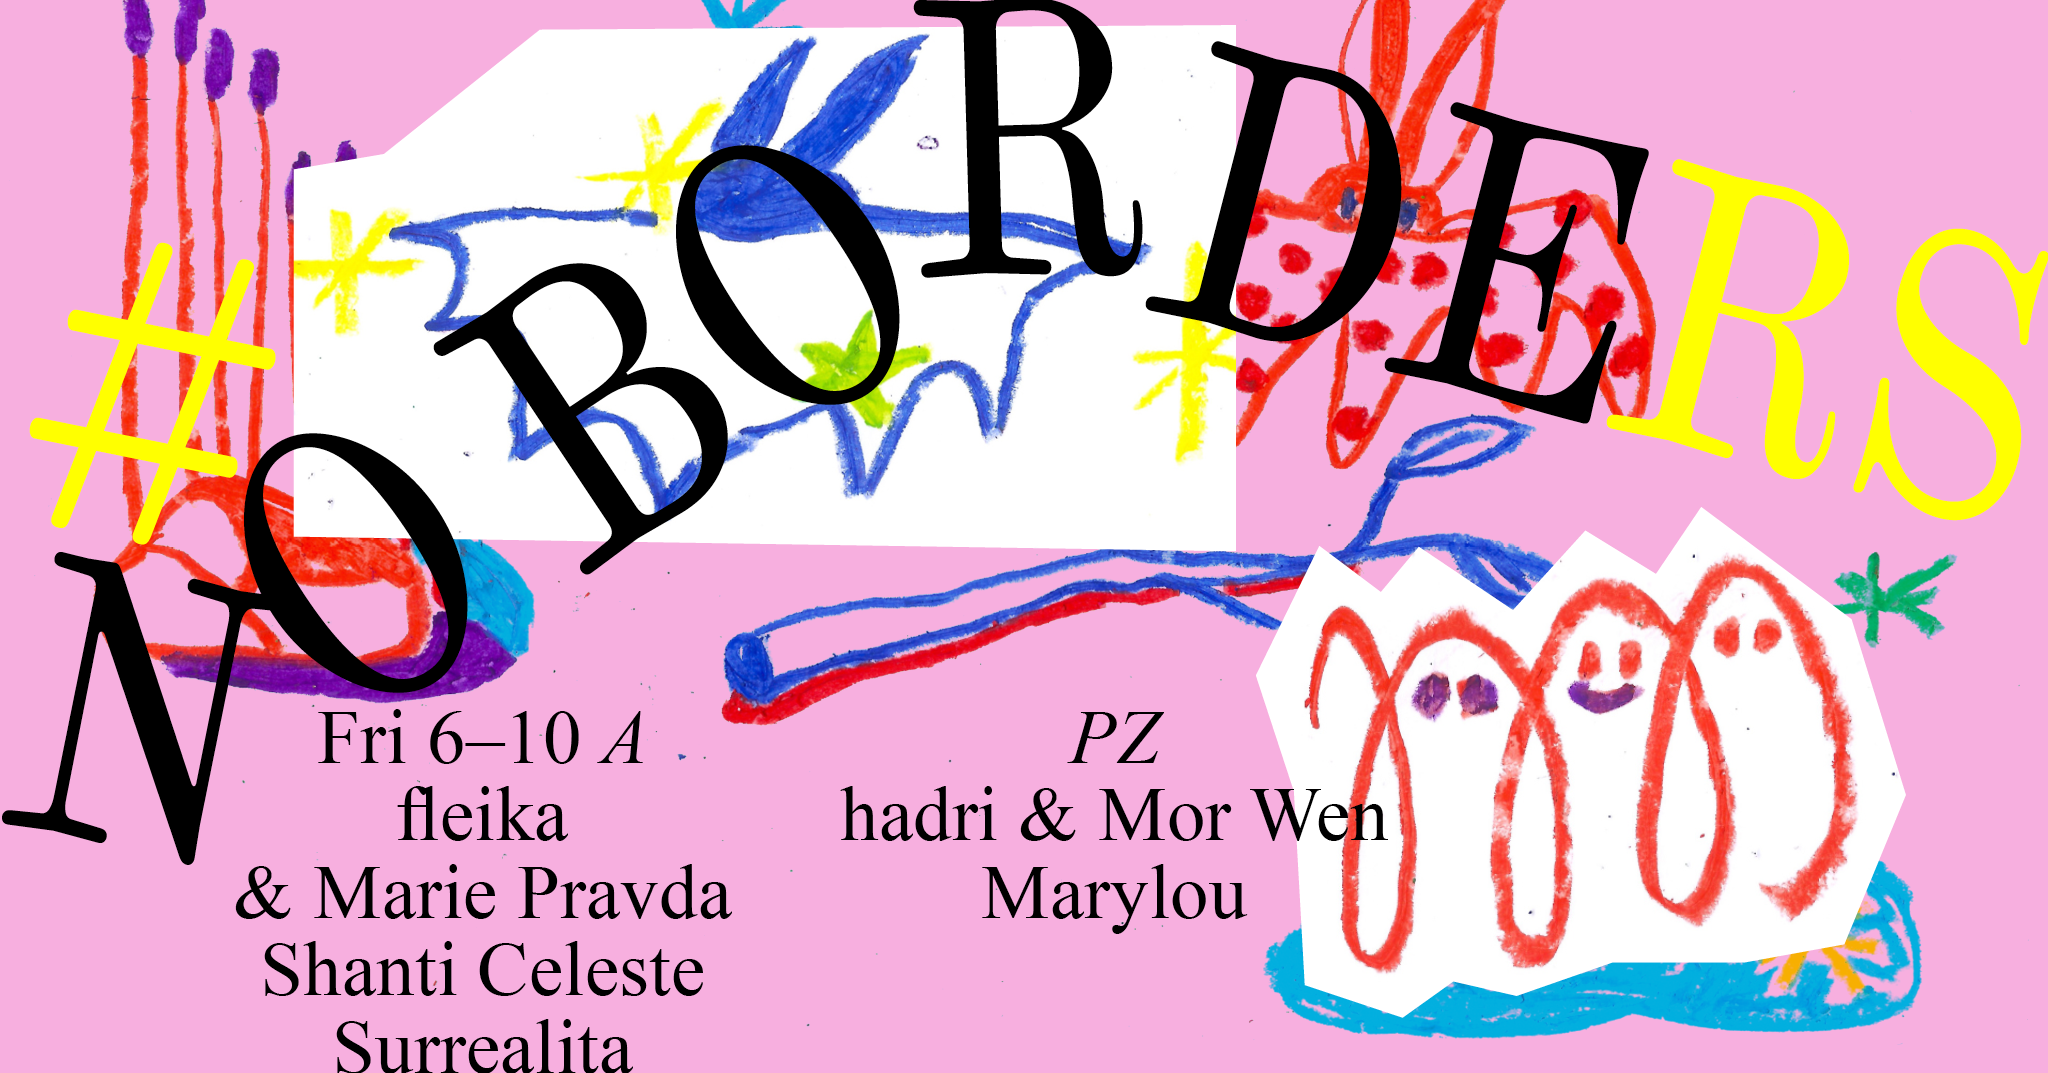 No Borders (A) fleika & Marie Pravda, Surrealita, Shanti Celeste (PZ) hadri & Mor Wen, Marylou - Página frontal